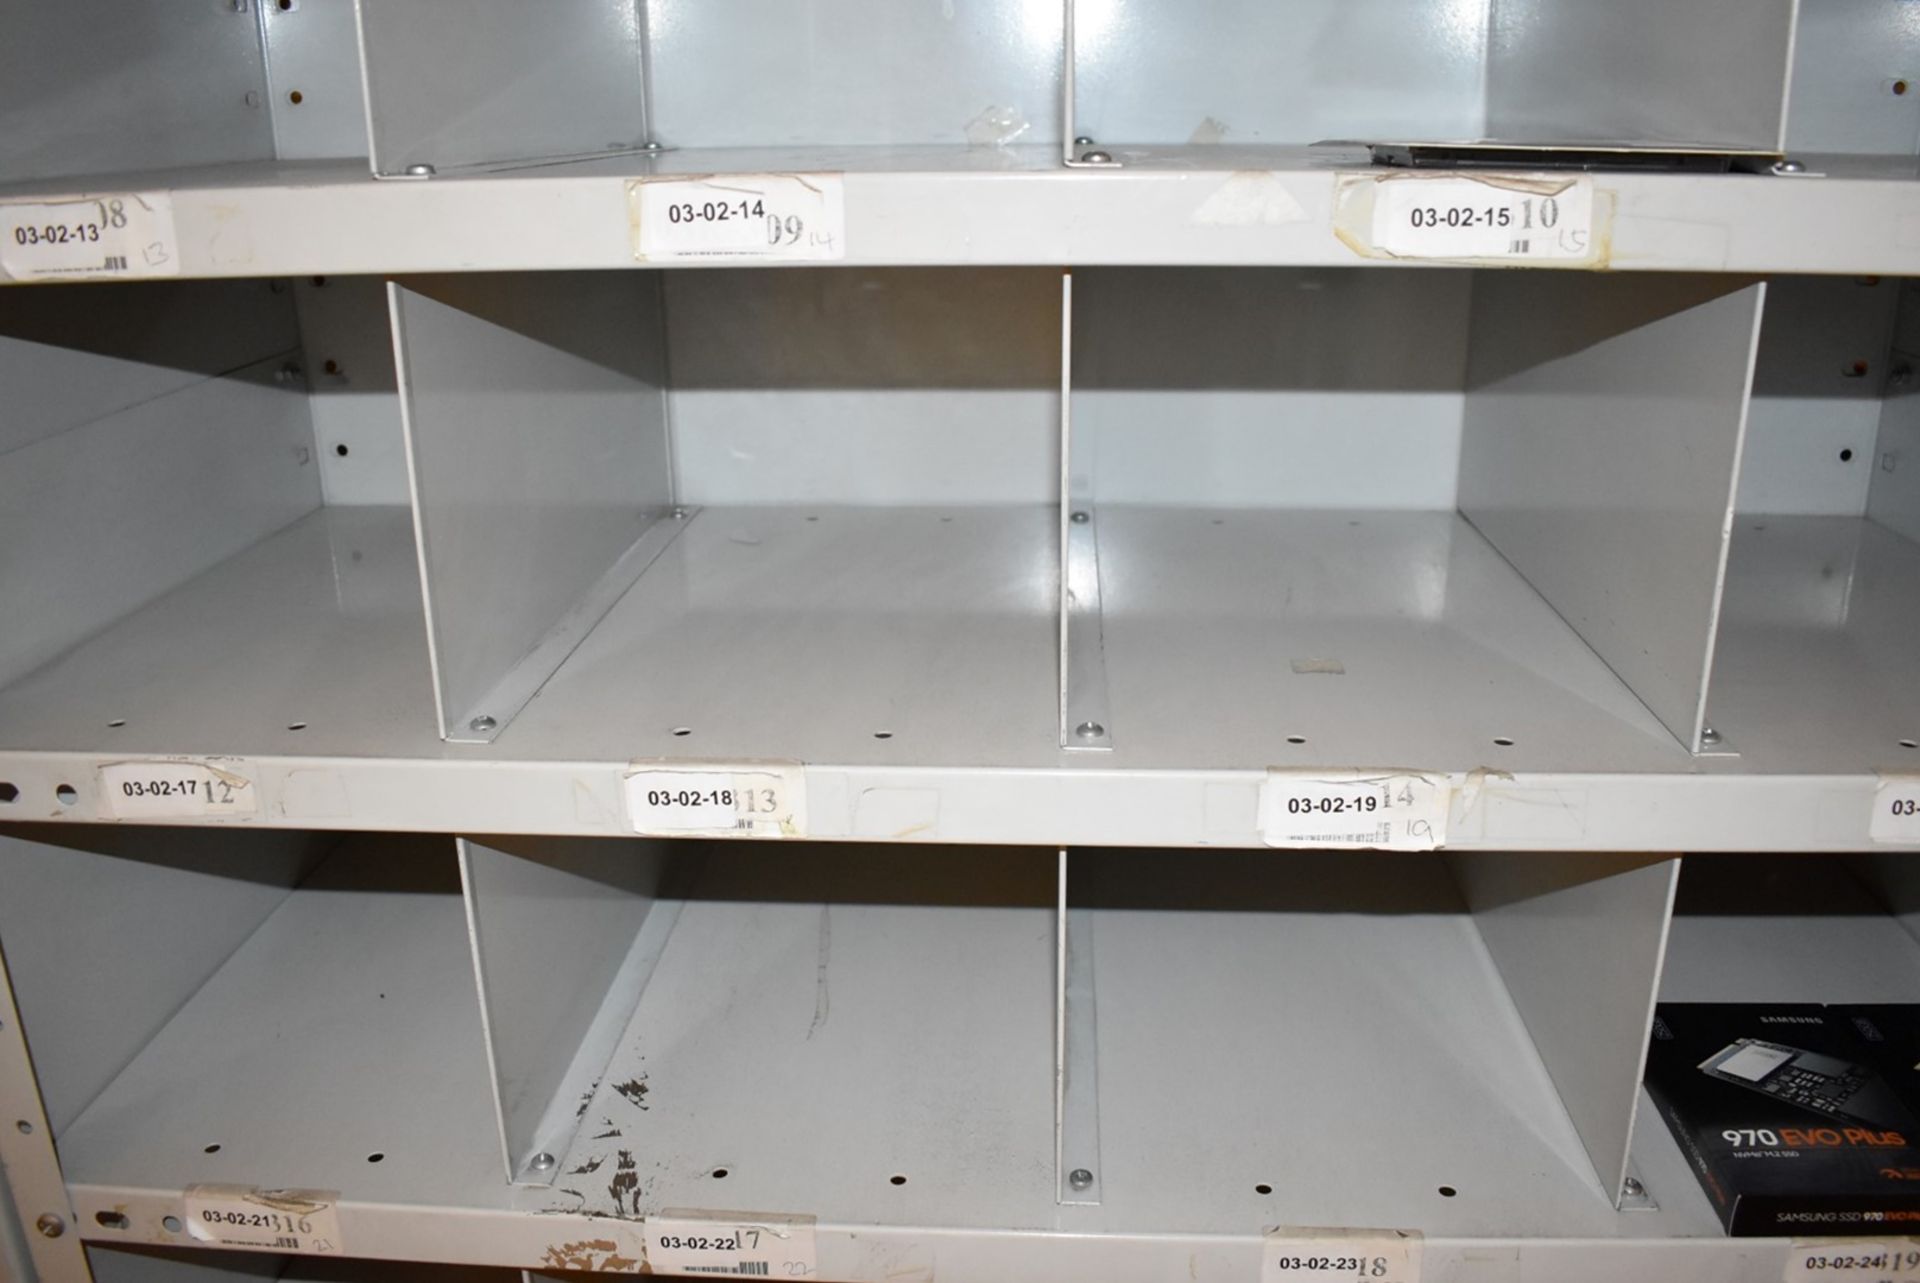 1 x Grey Metal Pigeon Hole Storage Unit - Size: H186 x W92 x D39 cms - Image 2 of 3